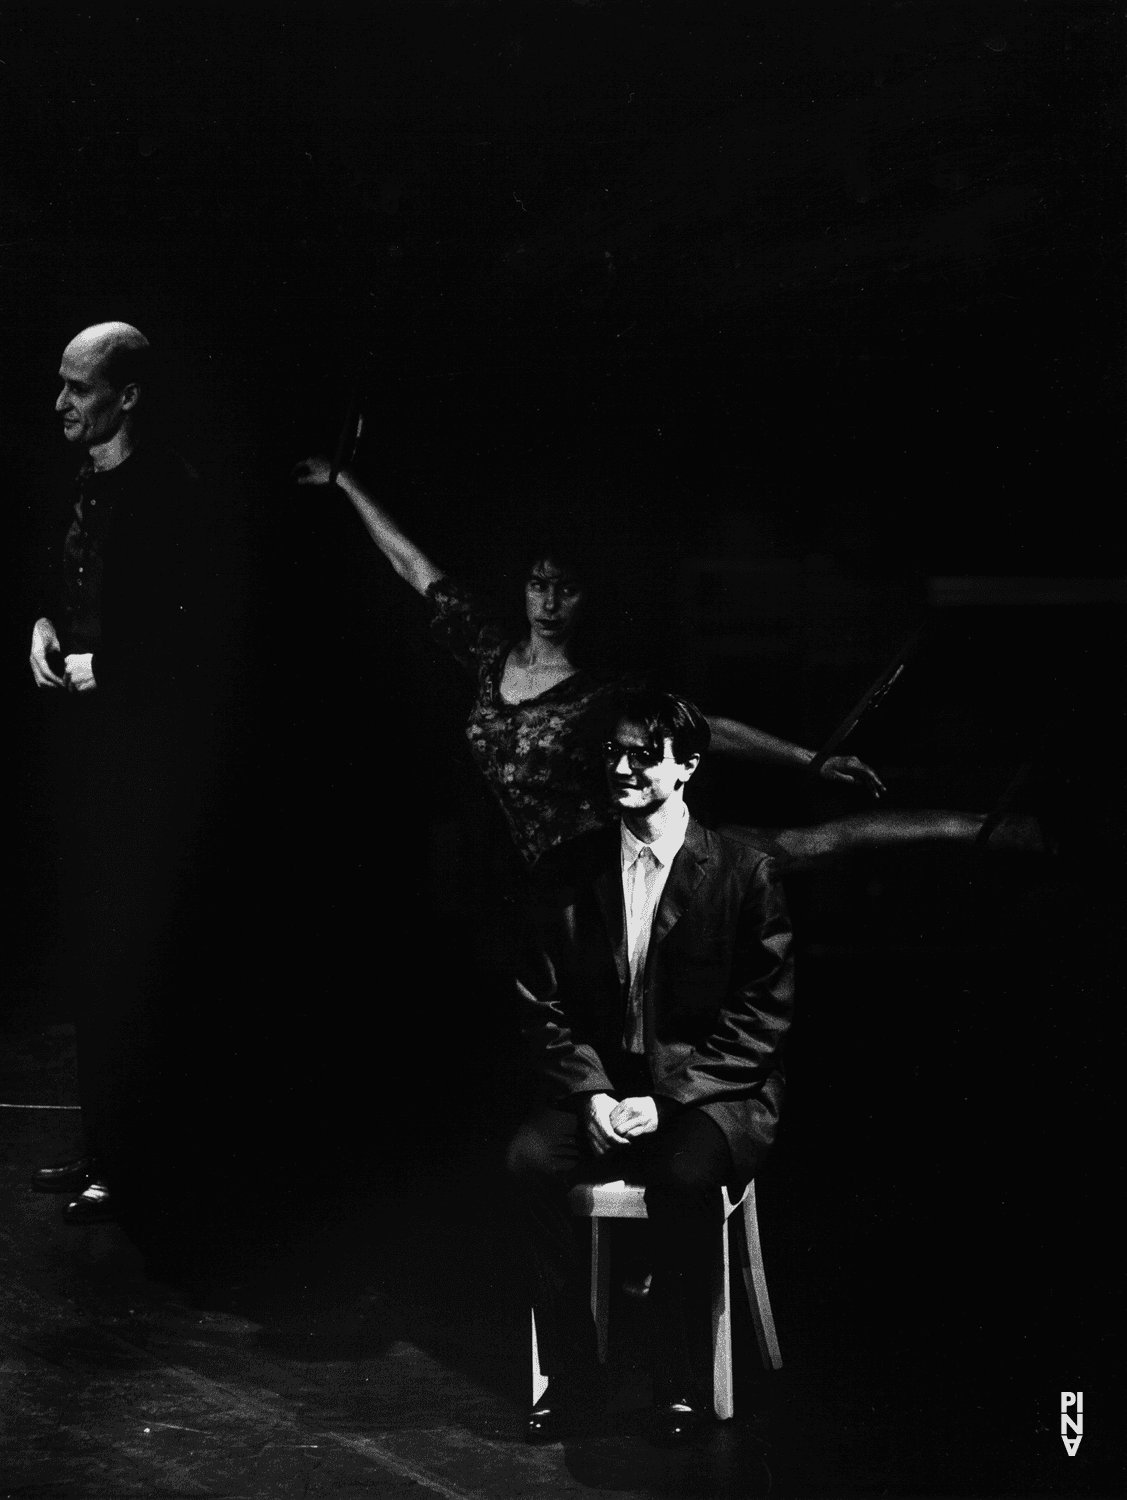 Jakob Haahr Andersen, Antonio Carallo and Bénédicte Billiet in “Viktor” by Pina Bausch